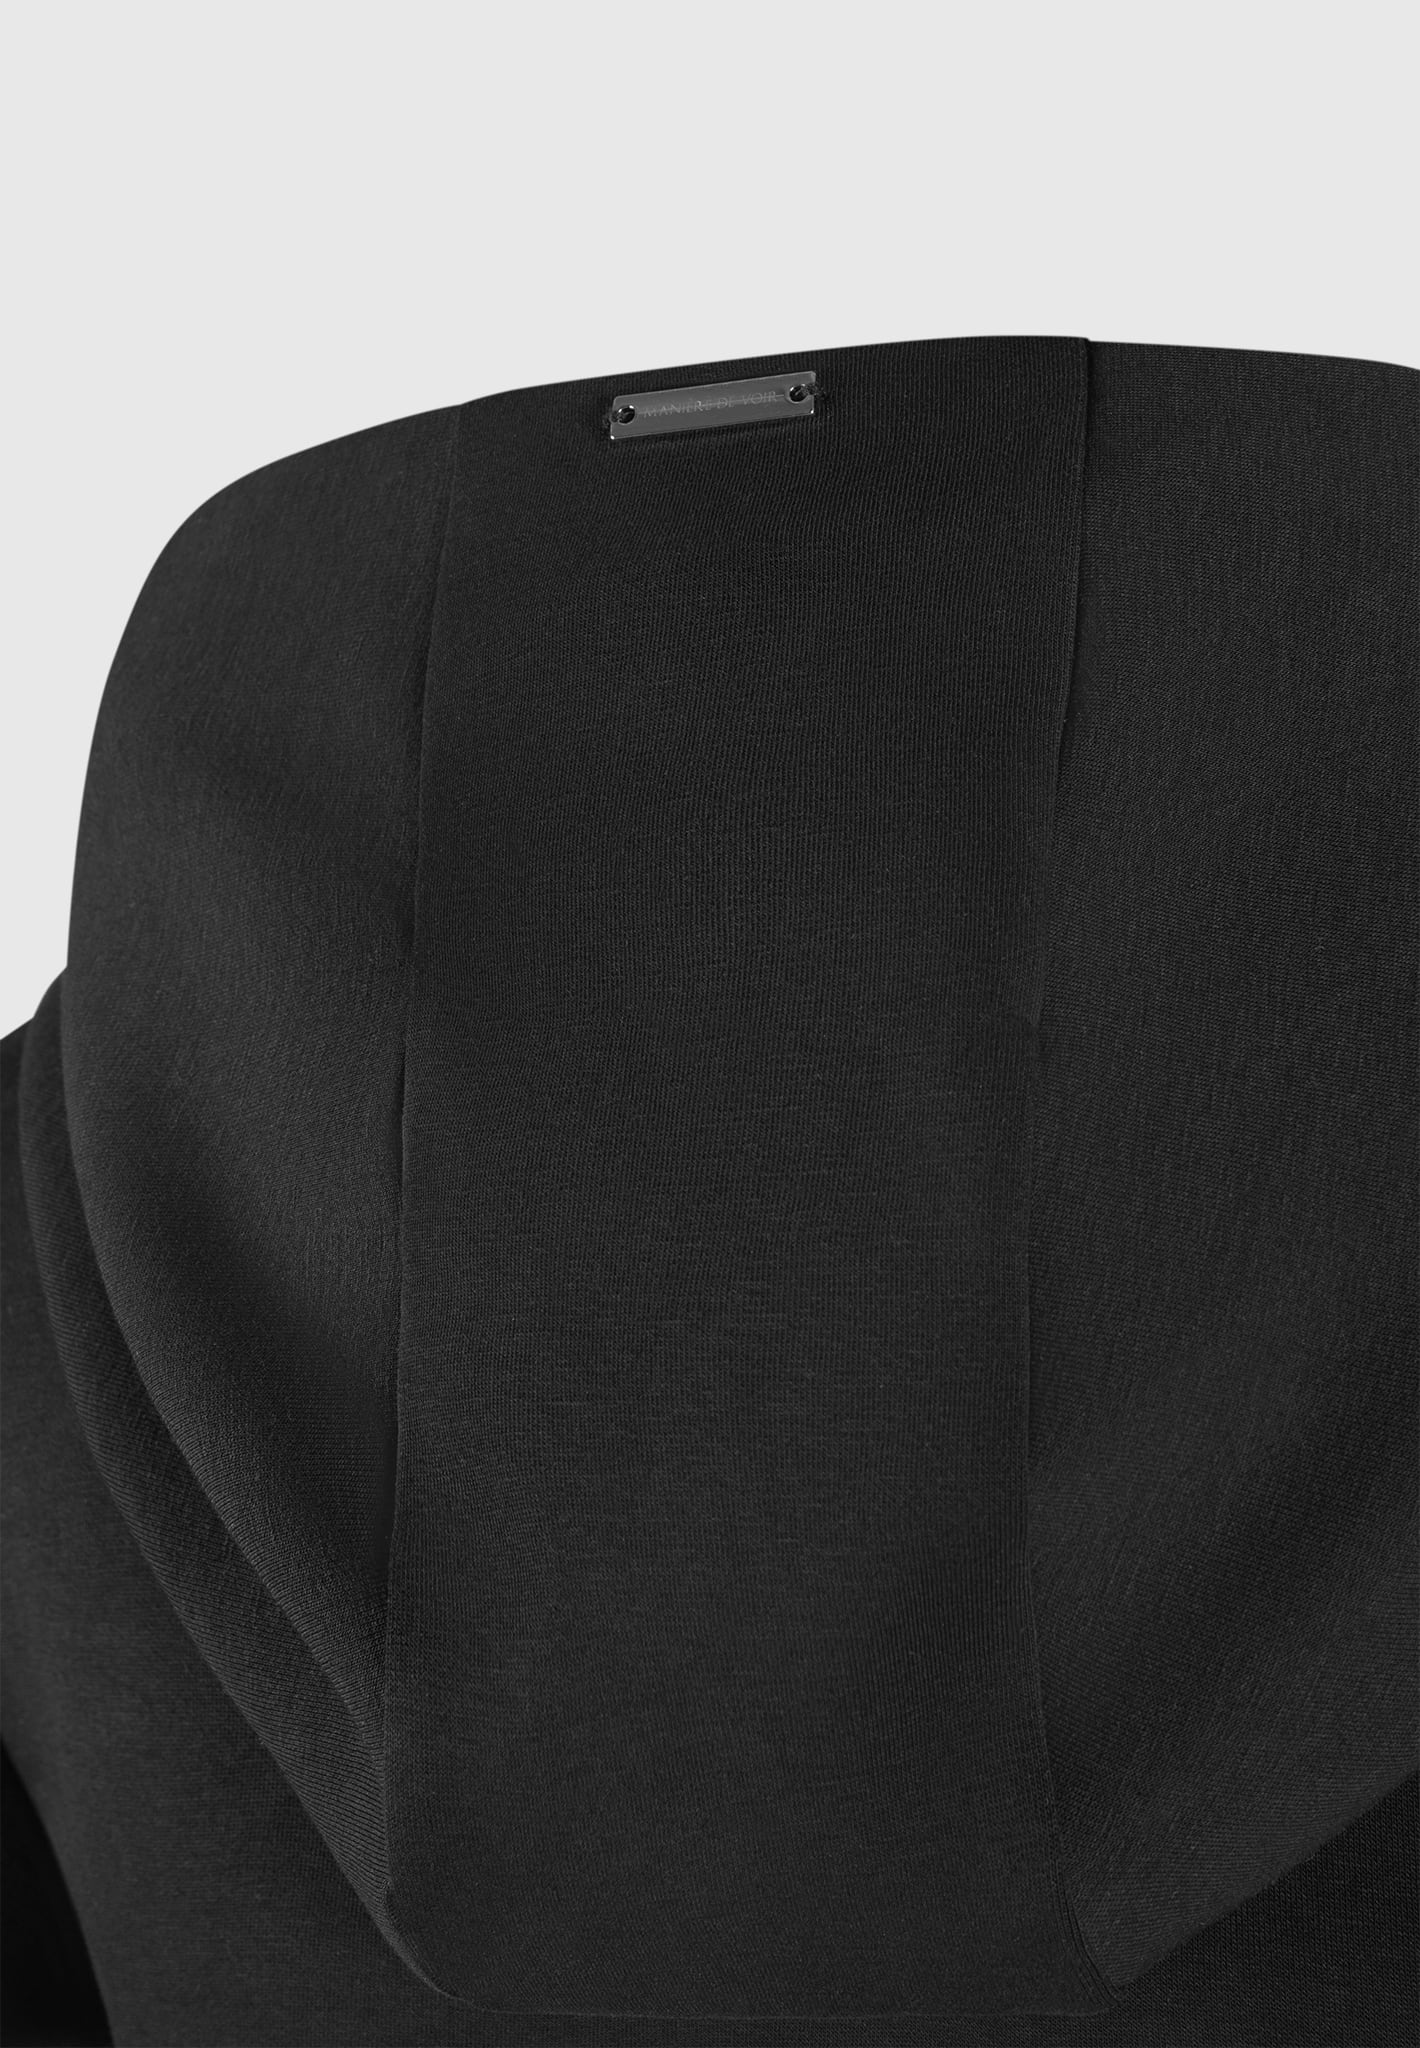 Accessorized Short Sleeve Black Bodysuit by Rue Les Createurs